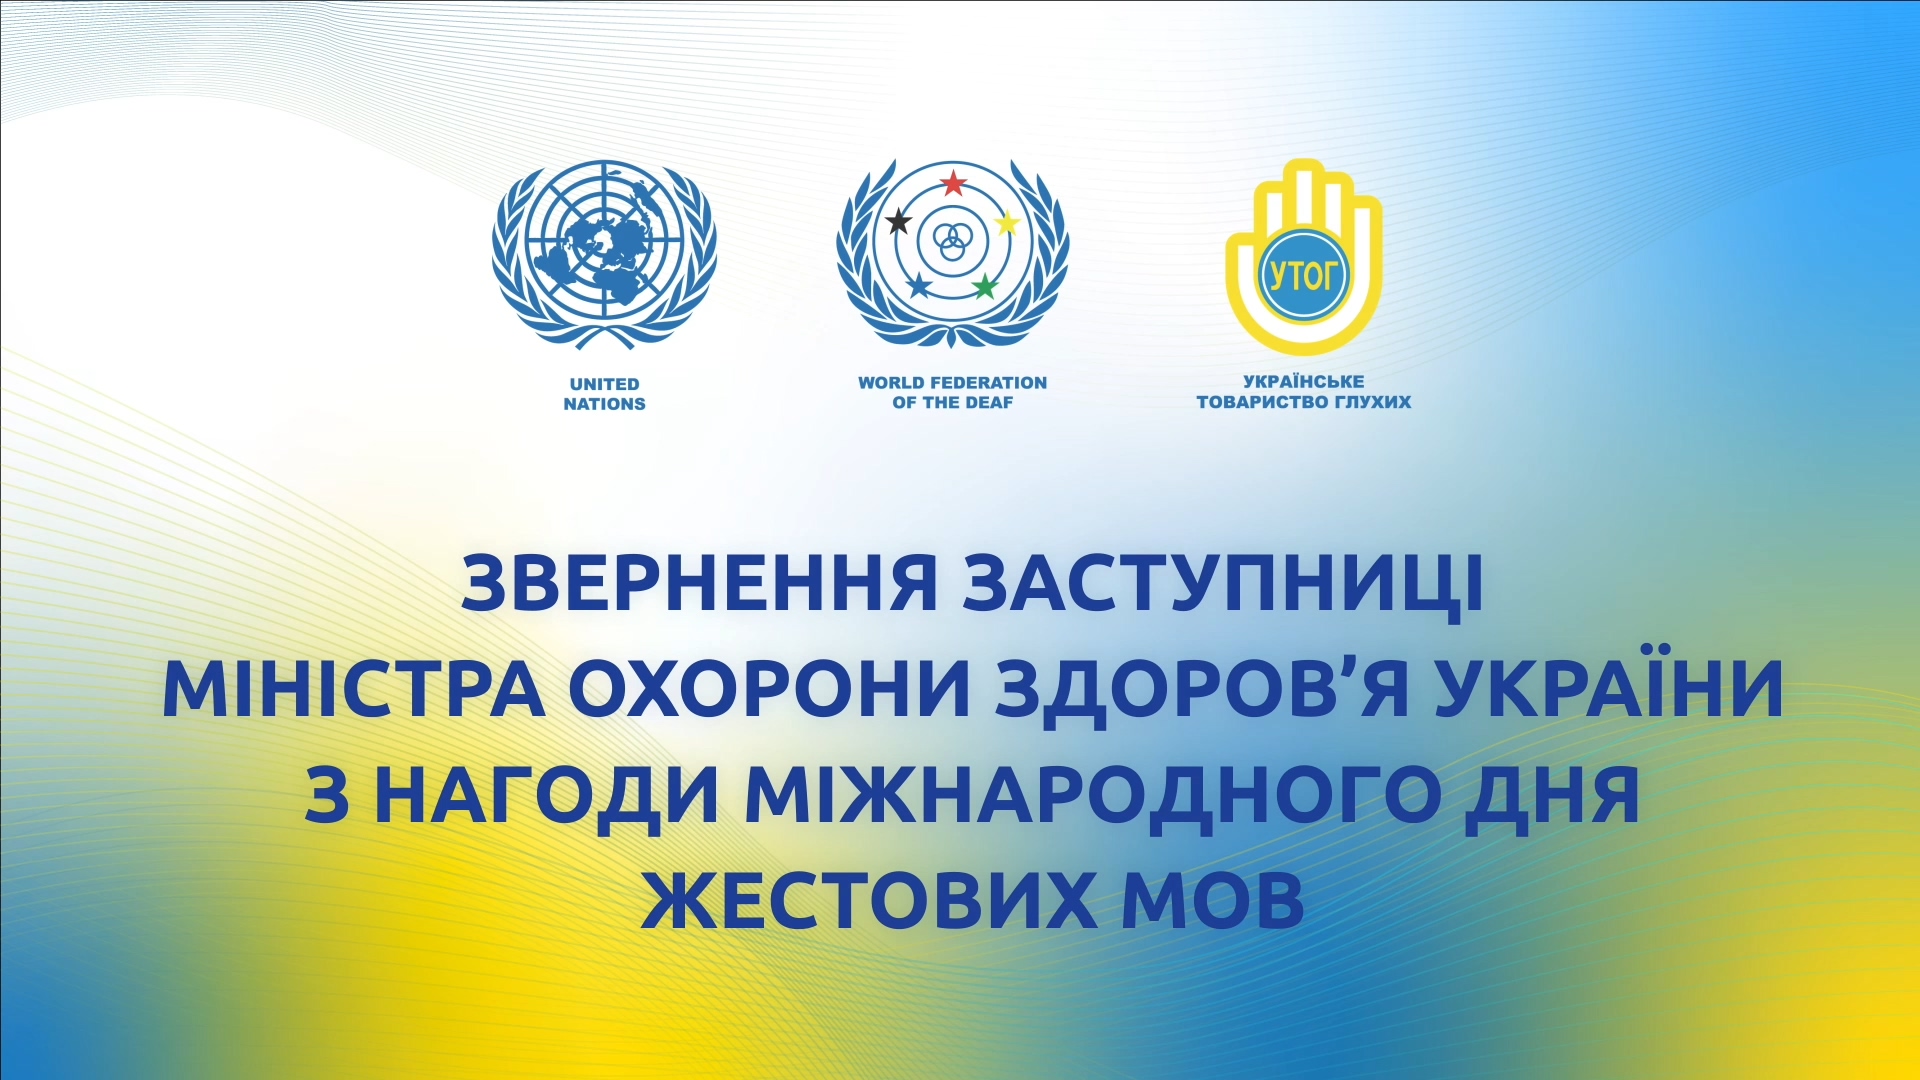 Звернення заступниці Міністра охорони здоров’я України з нагоди Міжнародного дня жестових мов